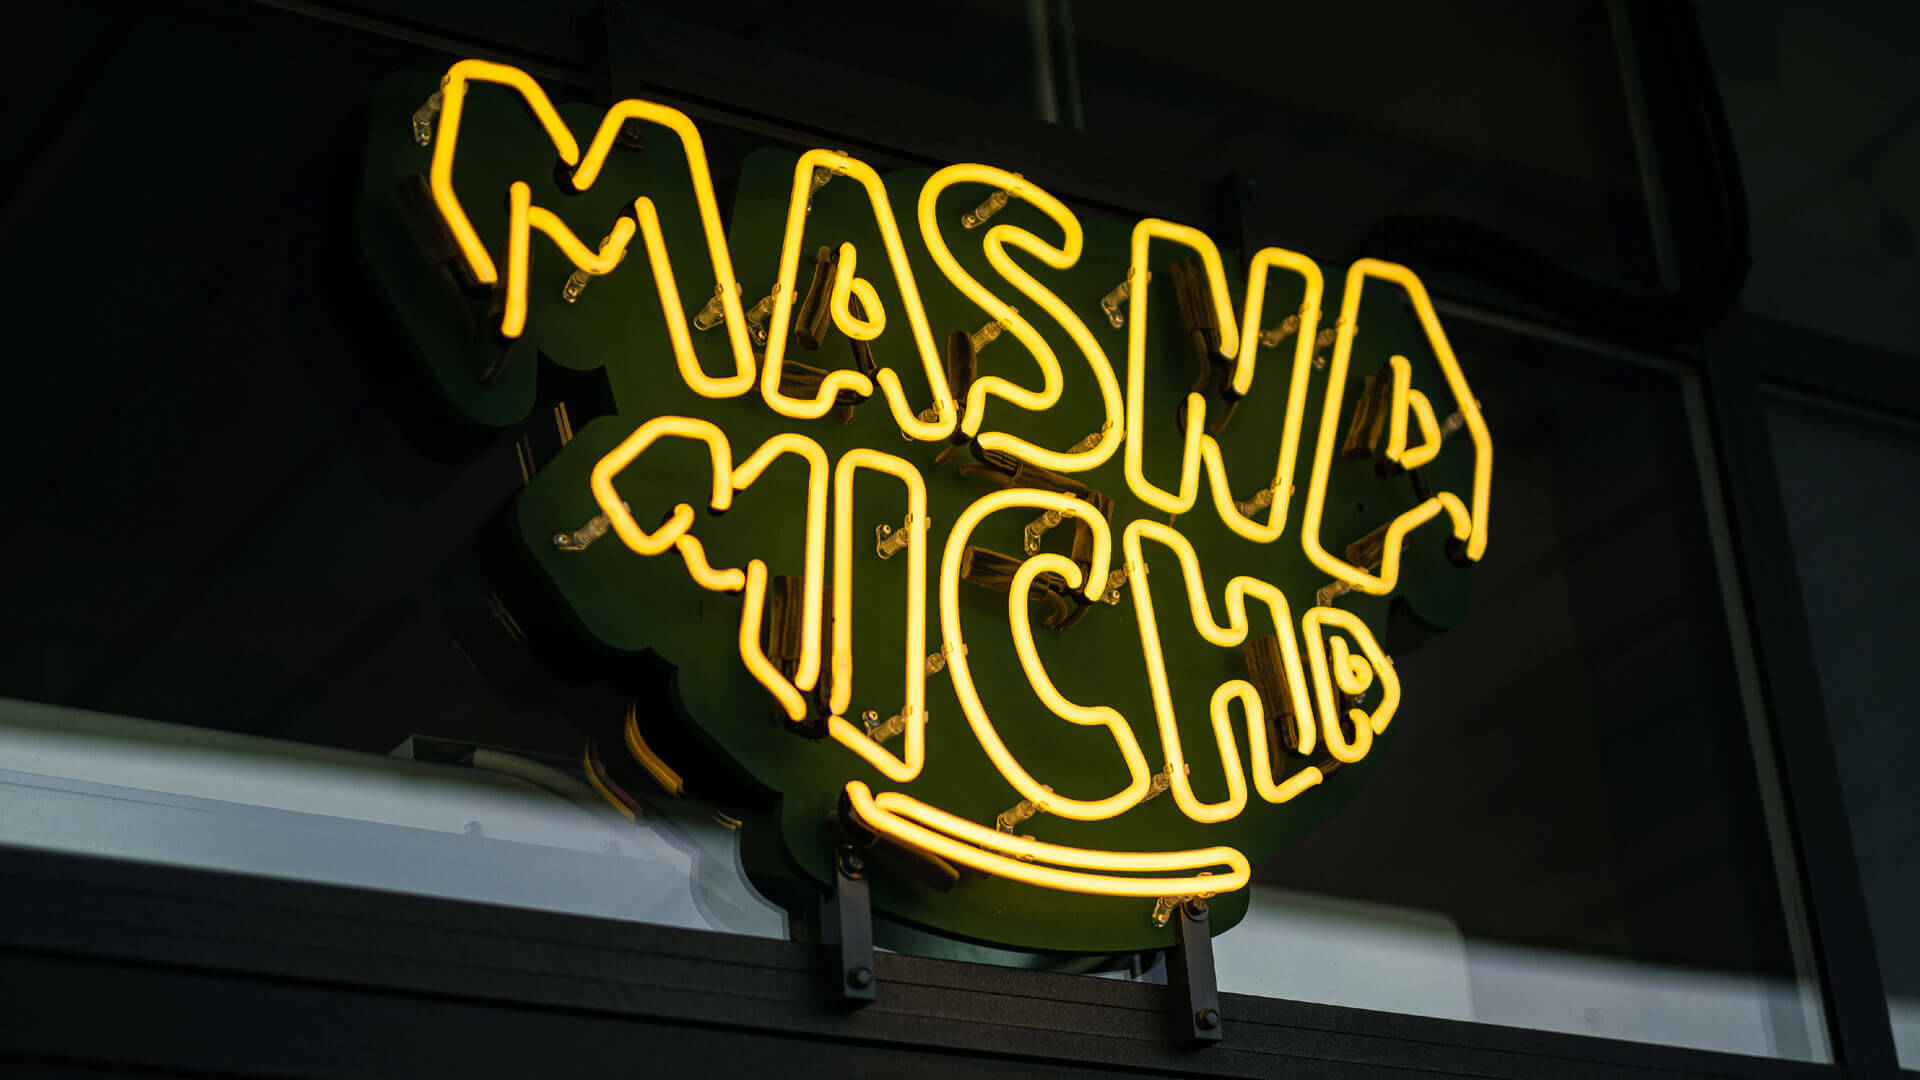 Masna Micha - Neon dla restauracji Masna Micha w gdańsku, na zewnątrz lokalu.